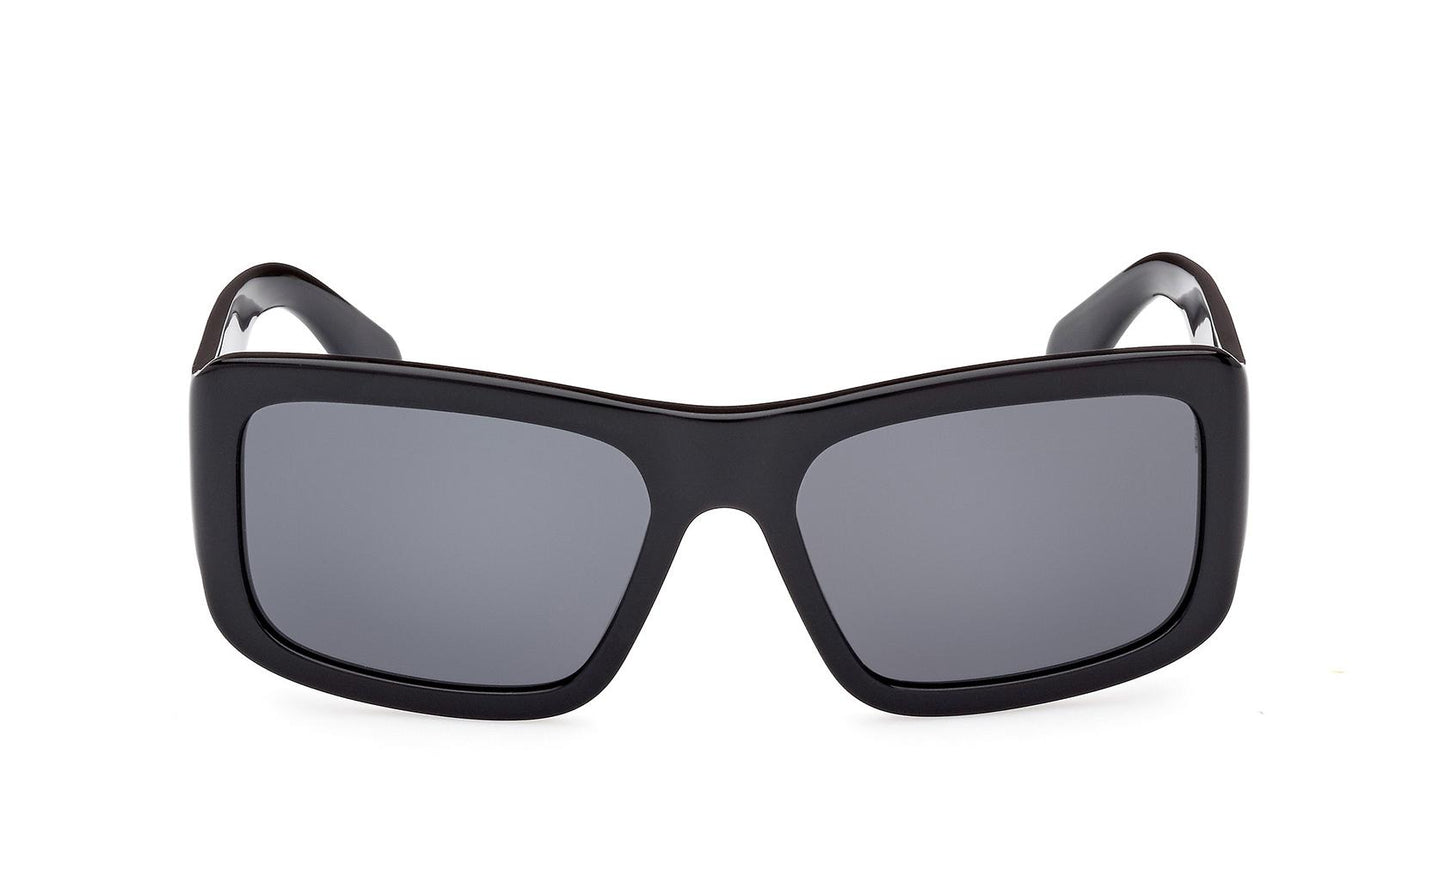 Adidas Originals Sunglasses OR0090 01A